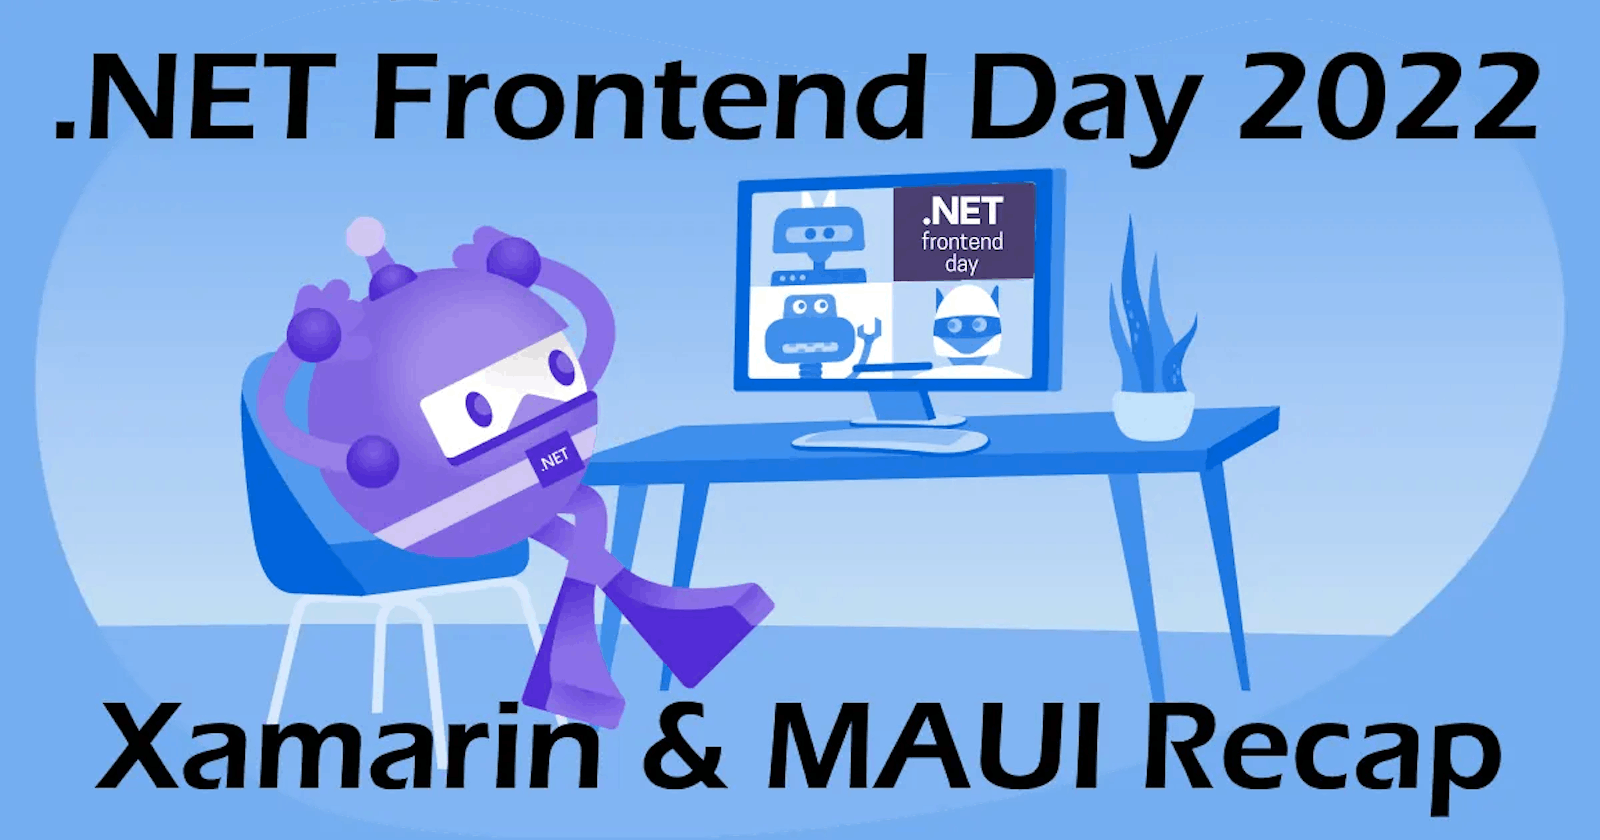 .NET Frontend Day 2022: Xamarin & MAUI Recap